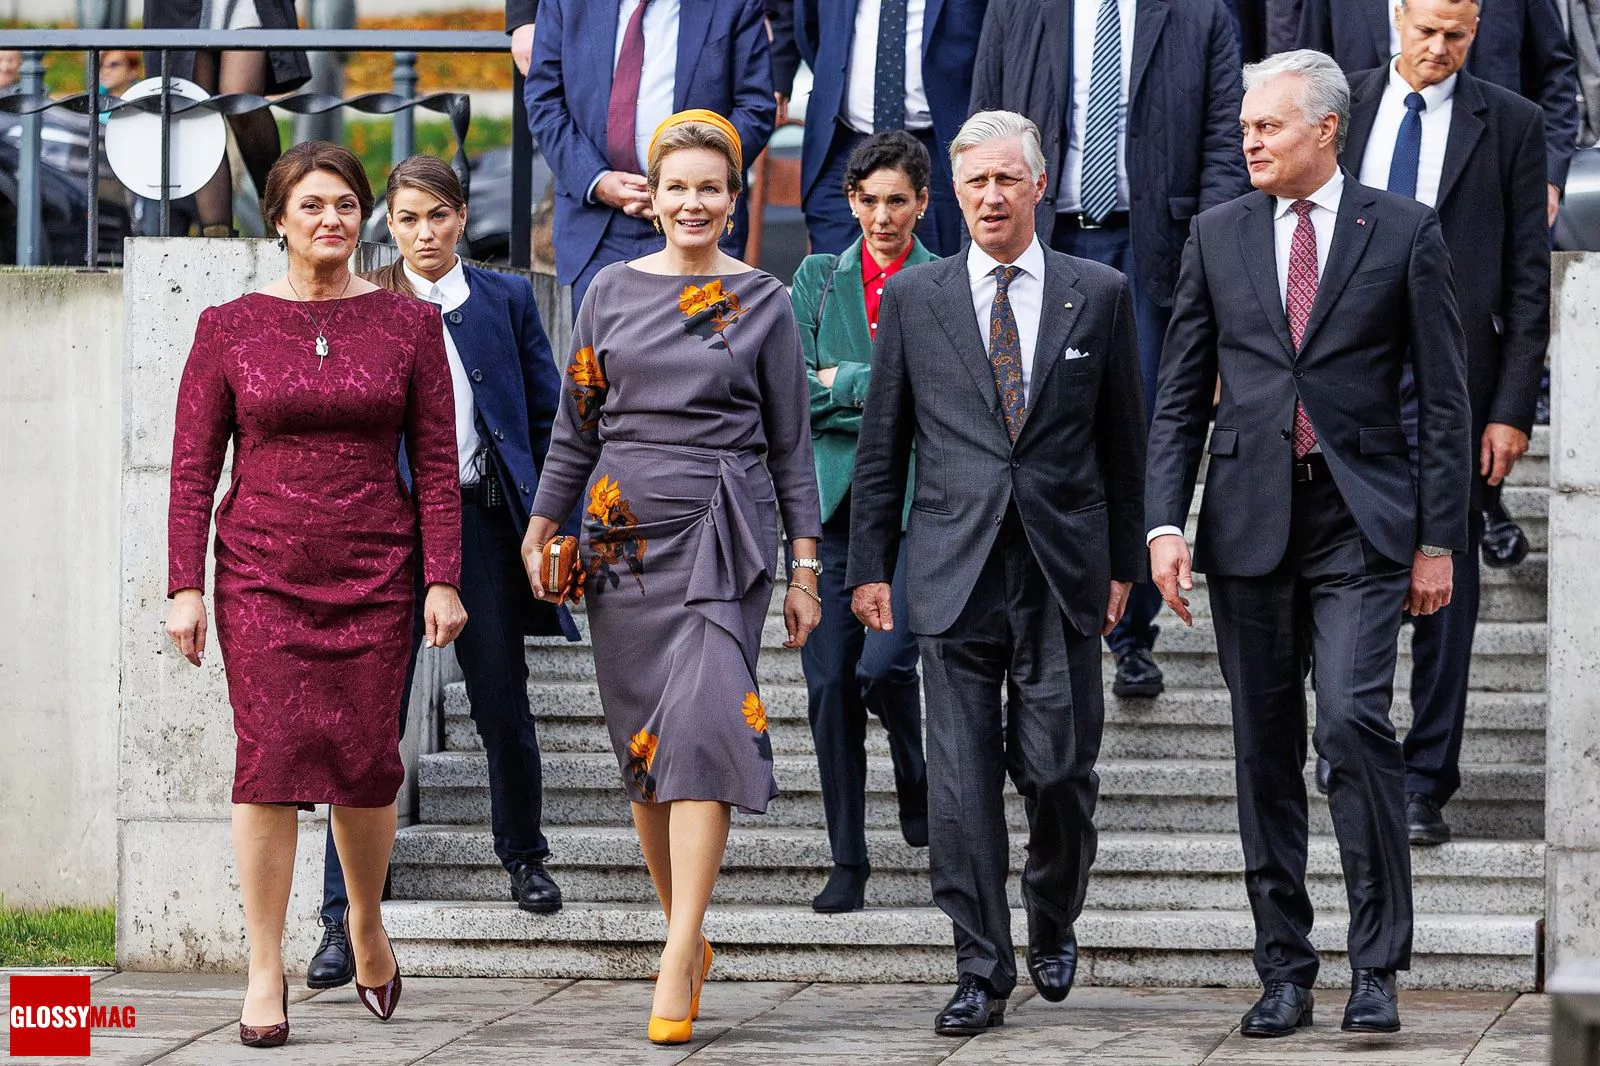 Король Бельгии Филипп и королева Матильда в сопровождении президента Литовской Республики Гитанаса Науседы и Первой леди Литвы Дианы Науседине